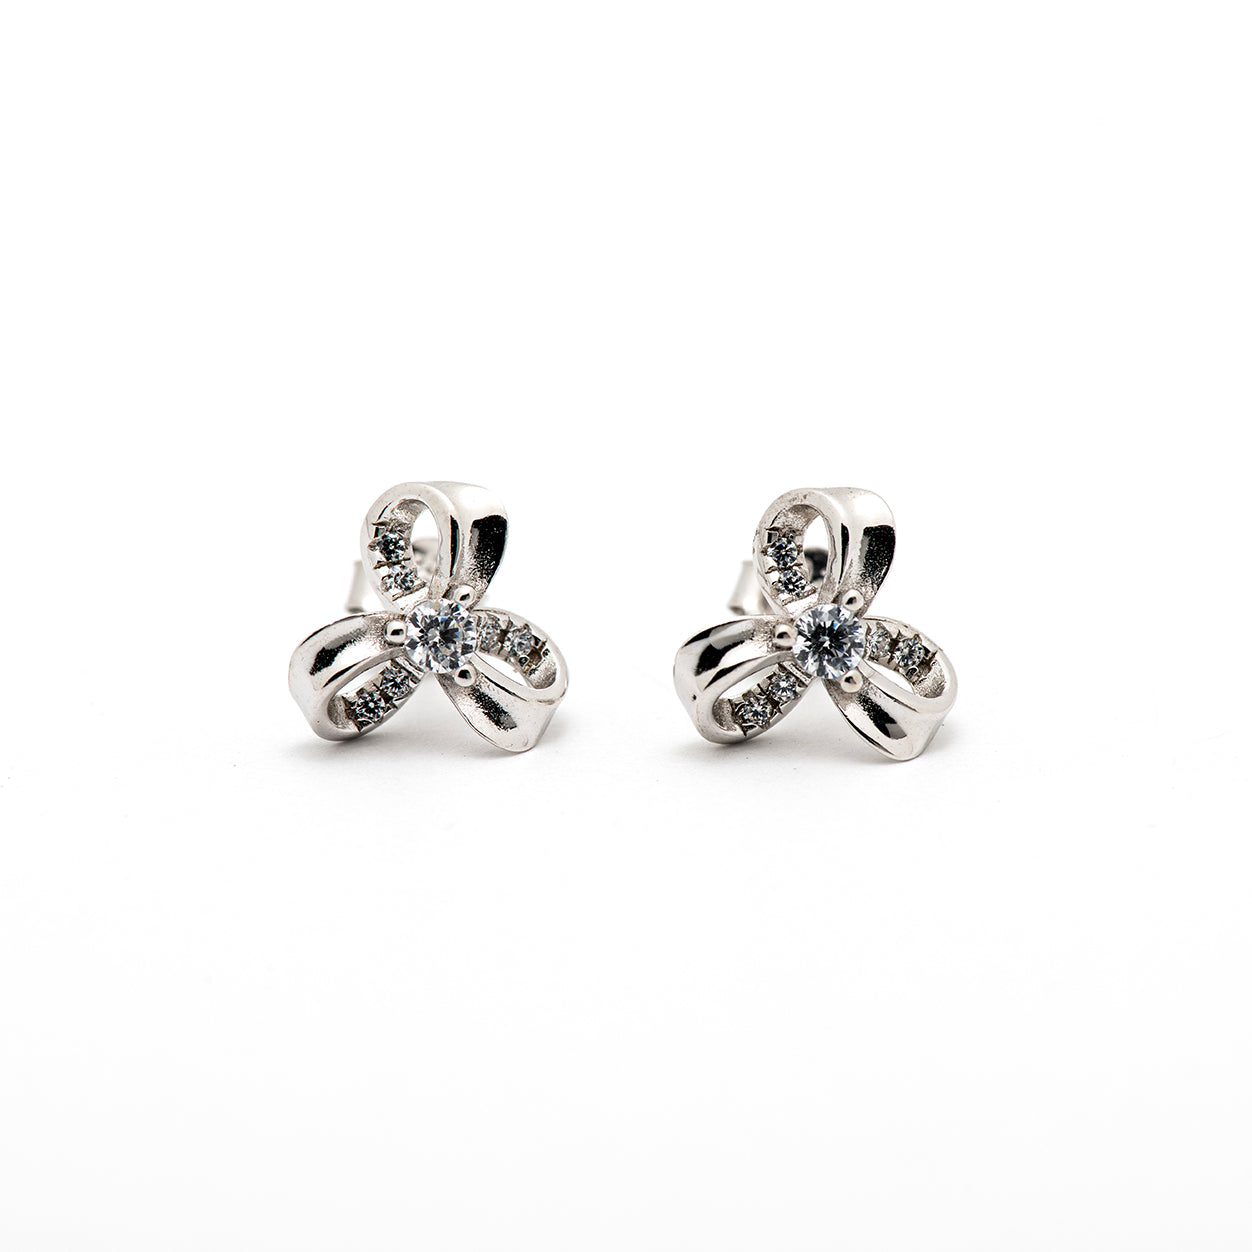 DK-925-114 sterling silver flower earrings